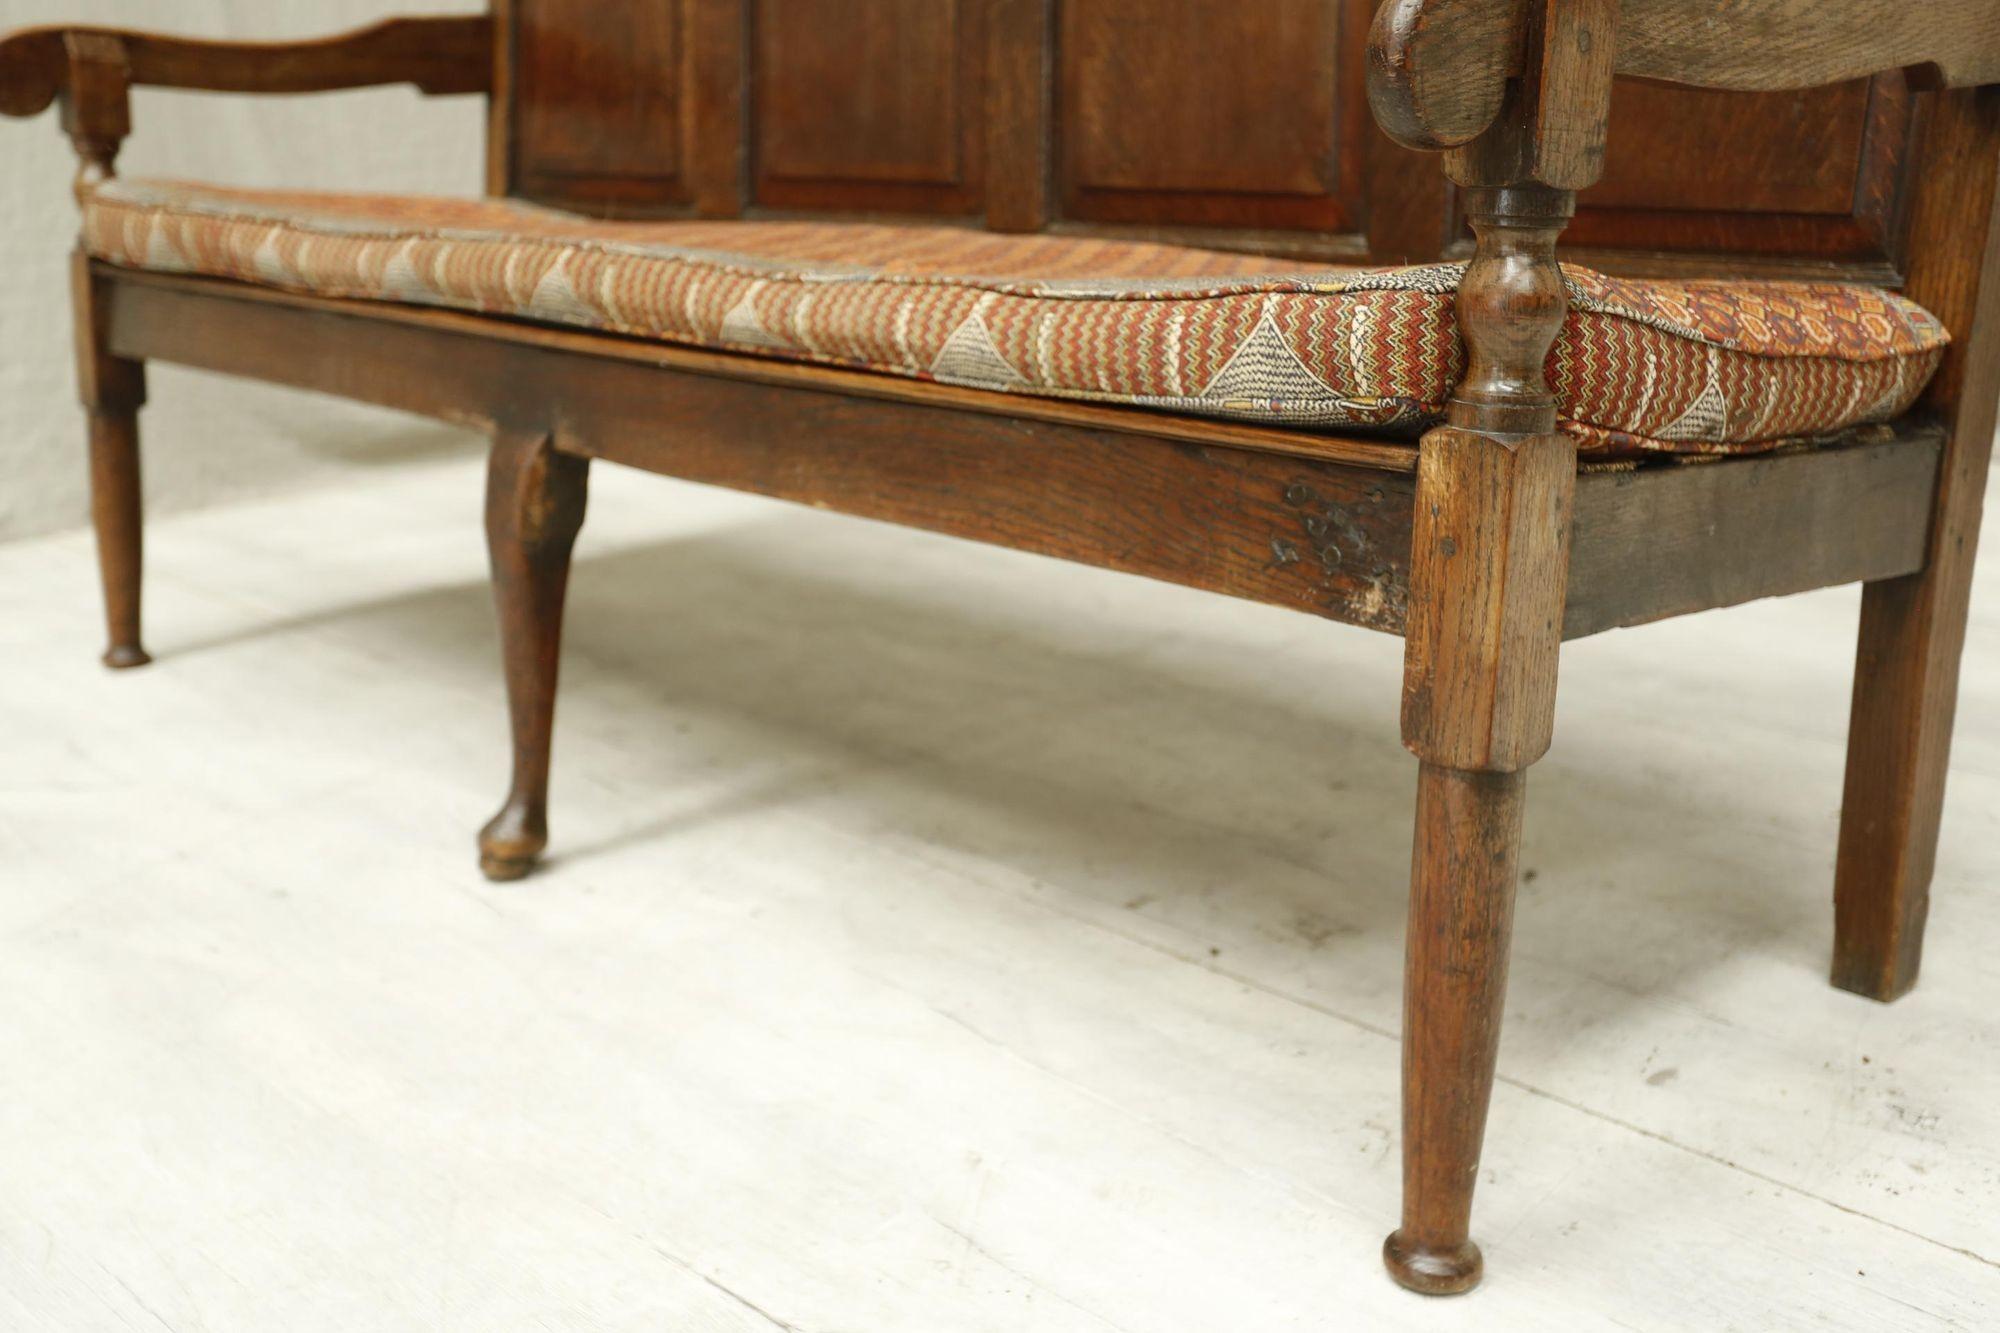 18th Century Oak Settle with Kilim Seat Cushion 2